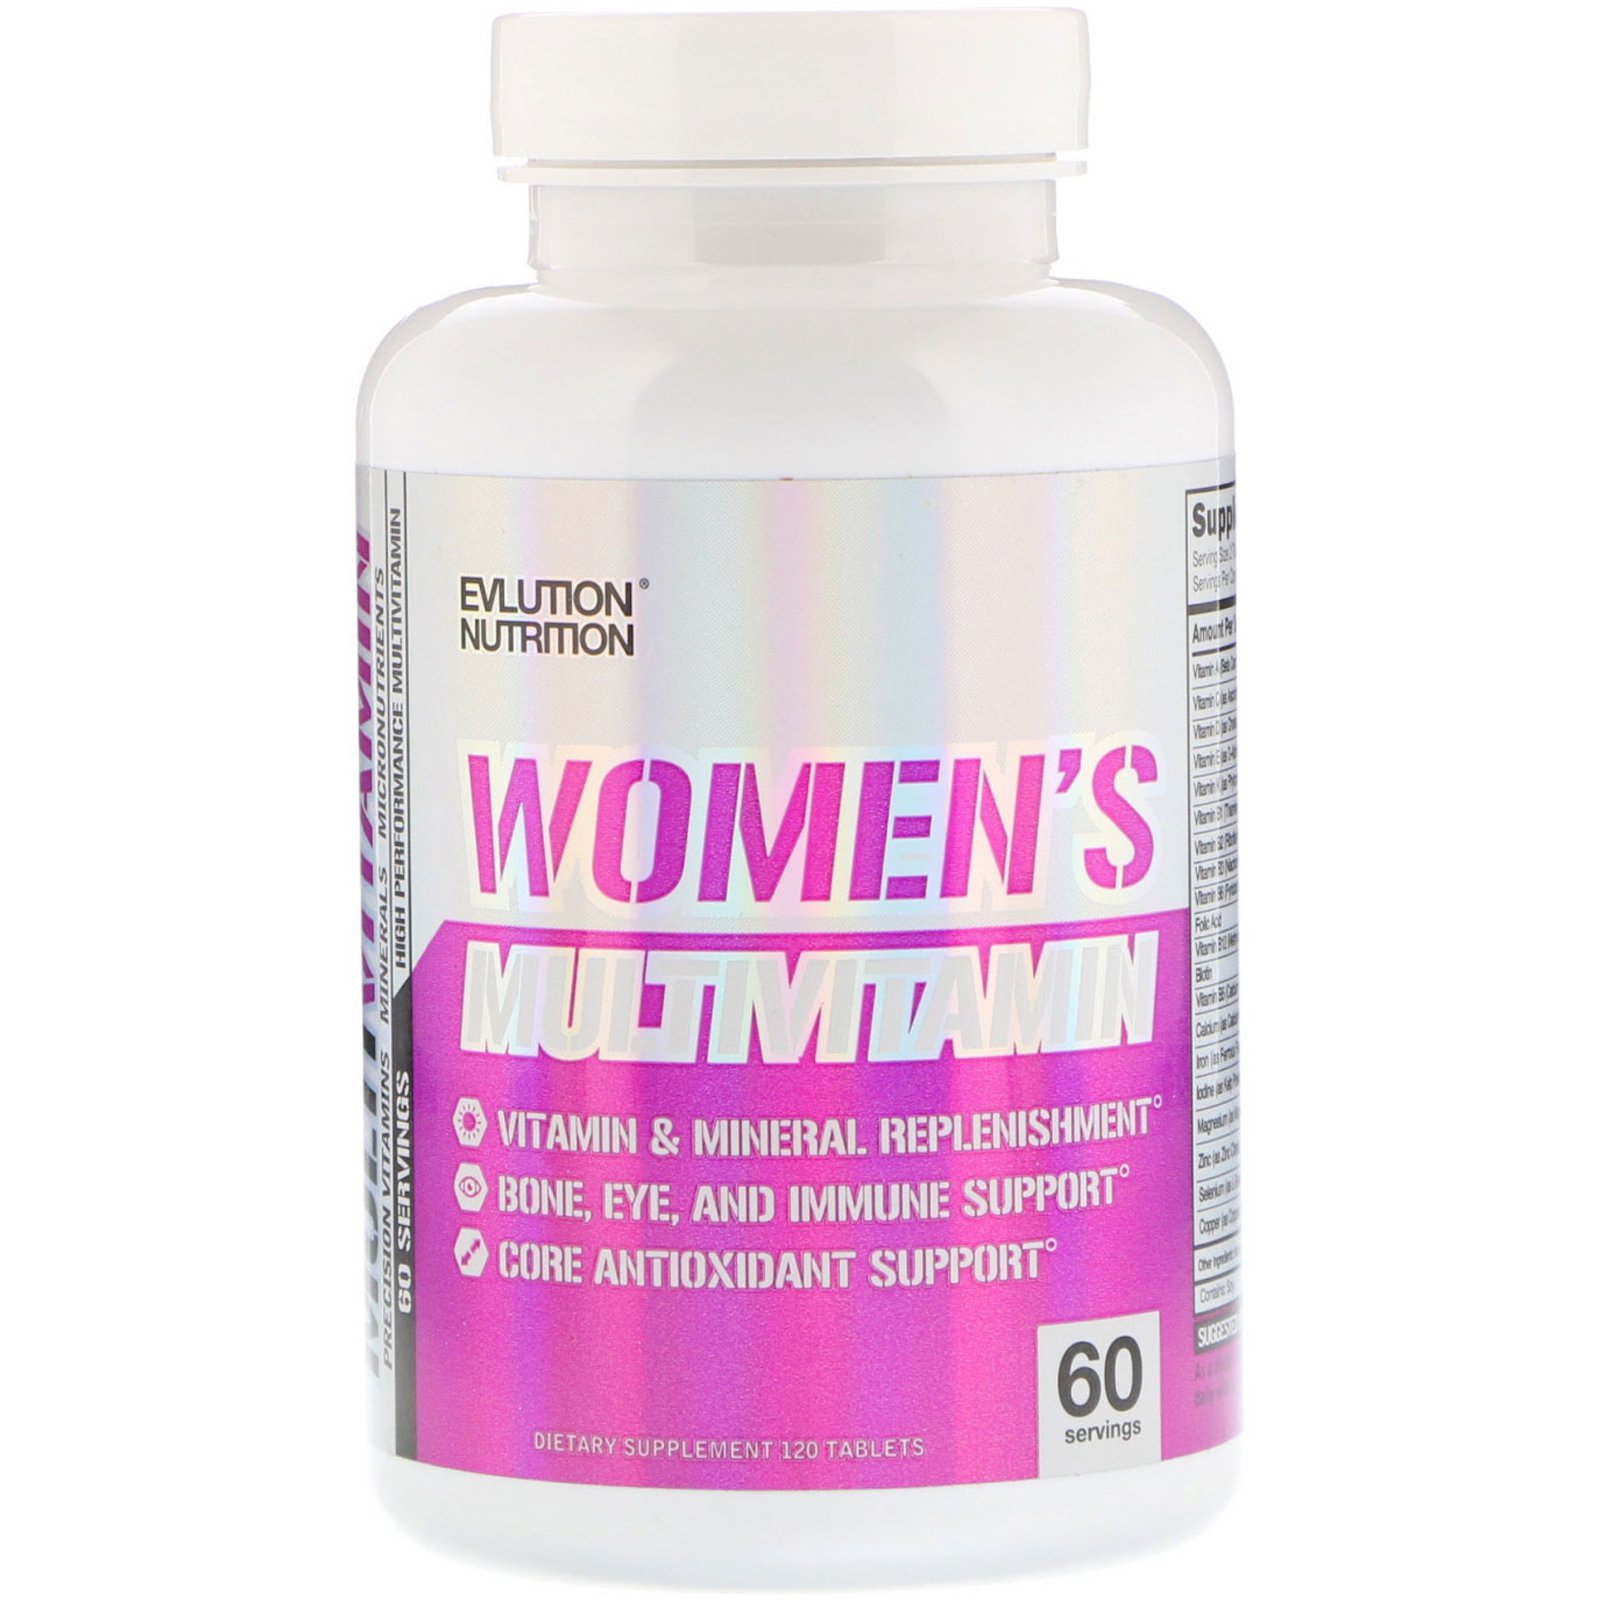 Топ мультивитаминов. Витамины women's Multivitamin Complex. Витамины для женщин NUTR. Женские спортивные витамины. Спортивные витамины для женщин американские.